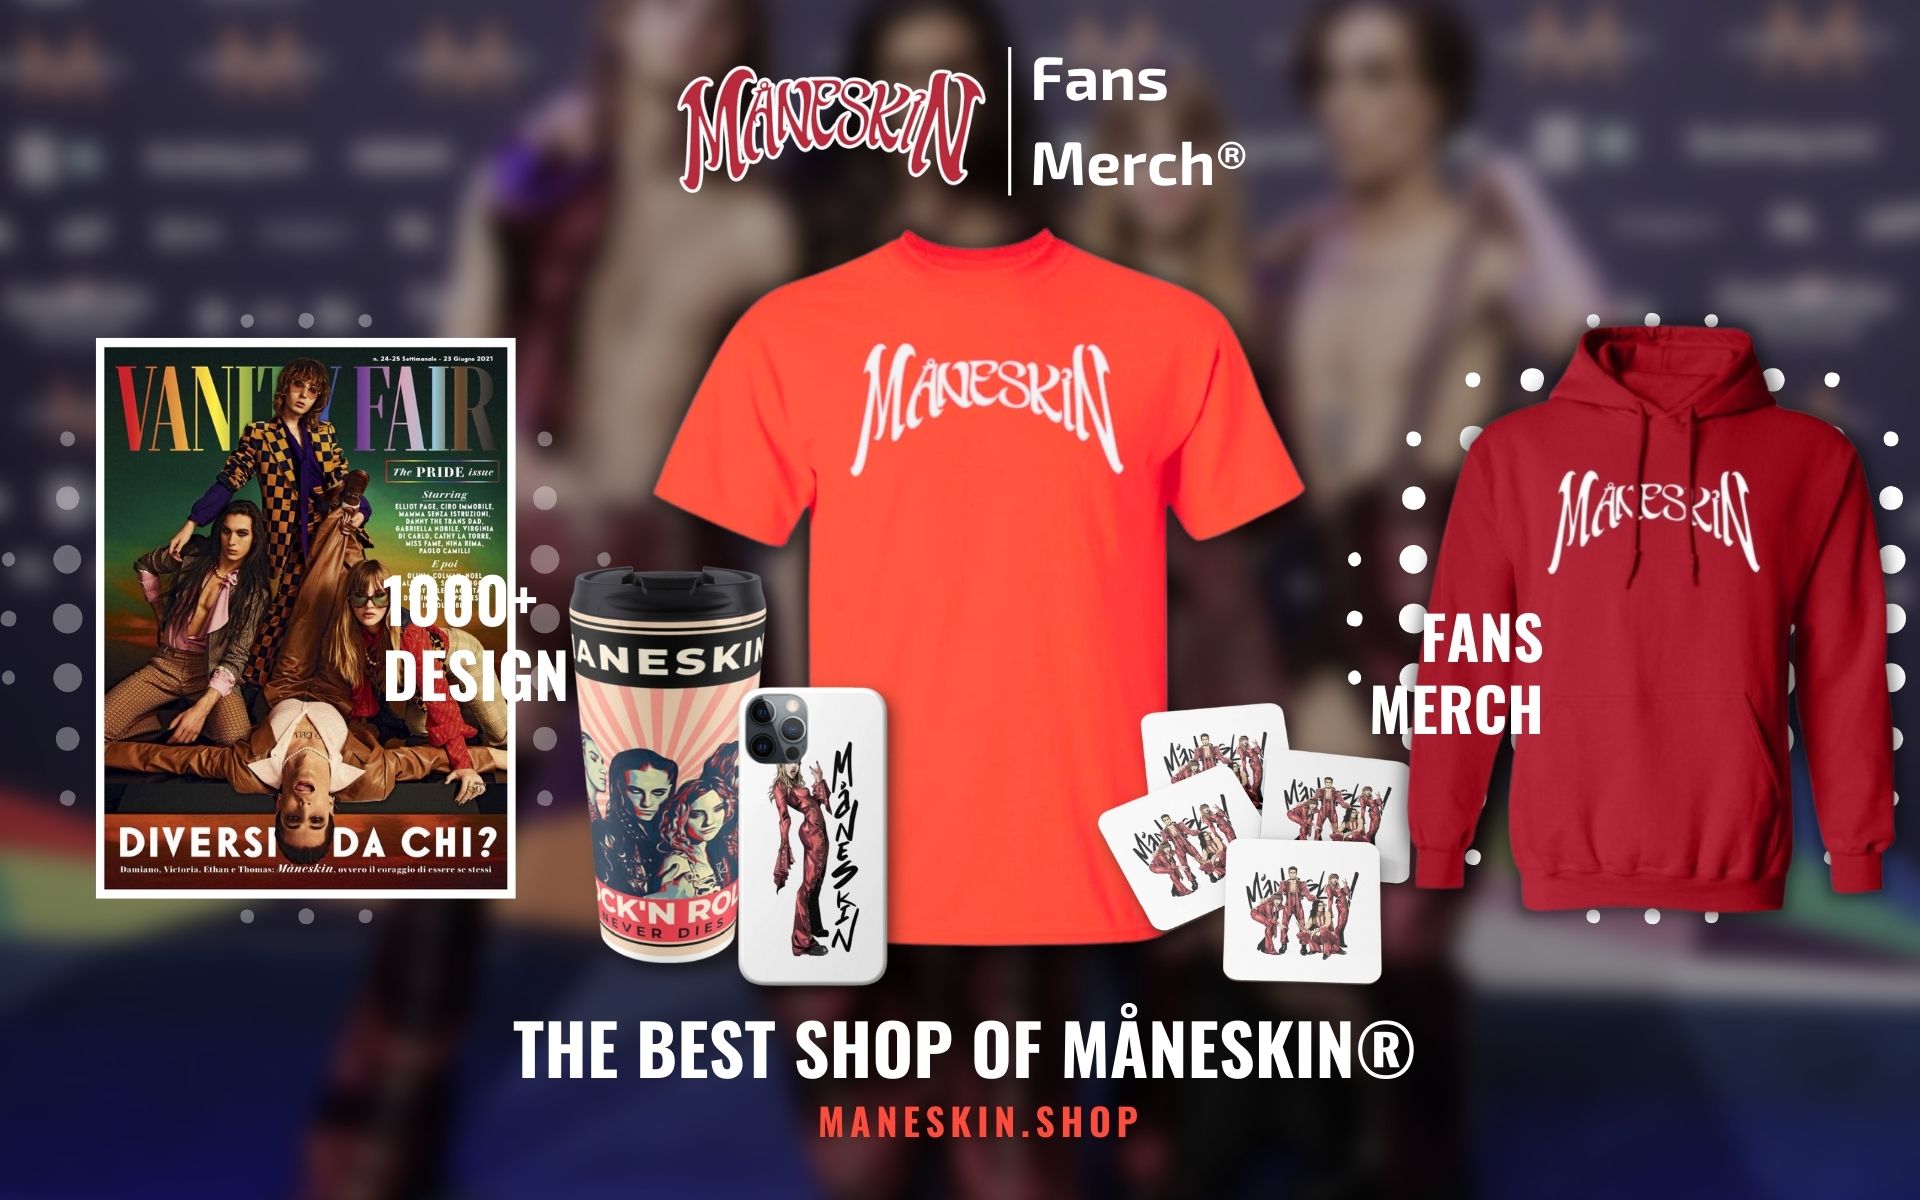 Maneskin Shop Web Banner - Maneskin Shop